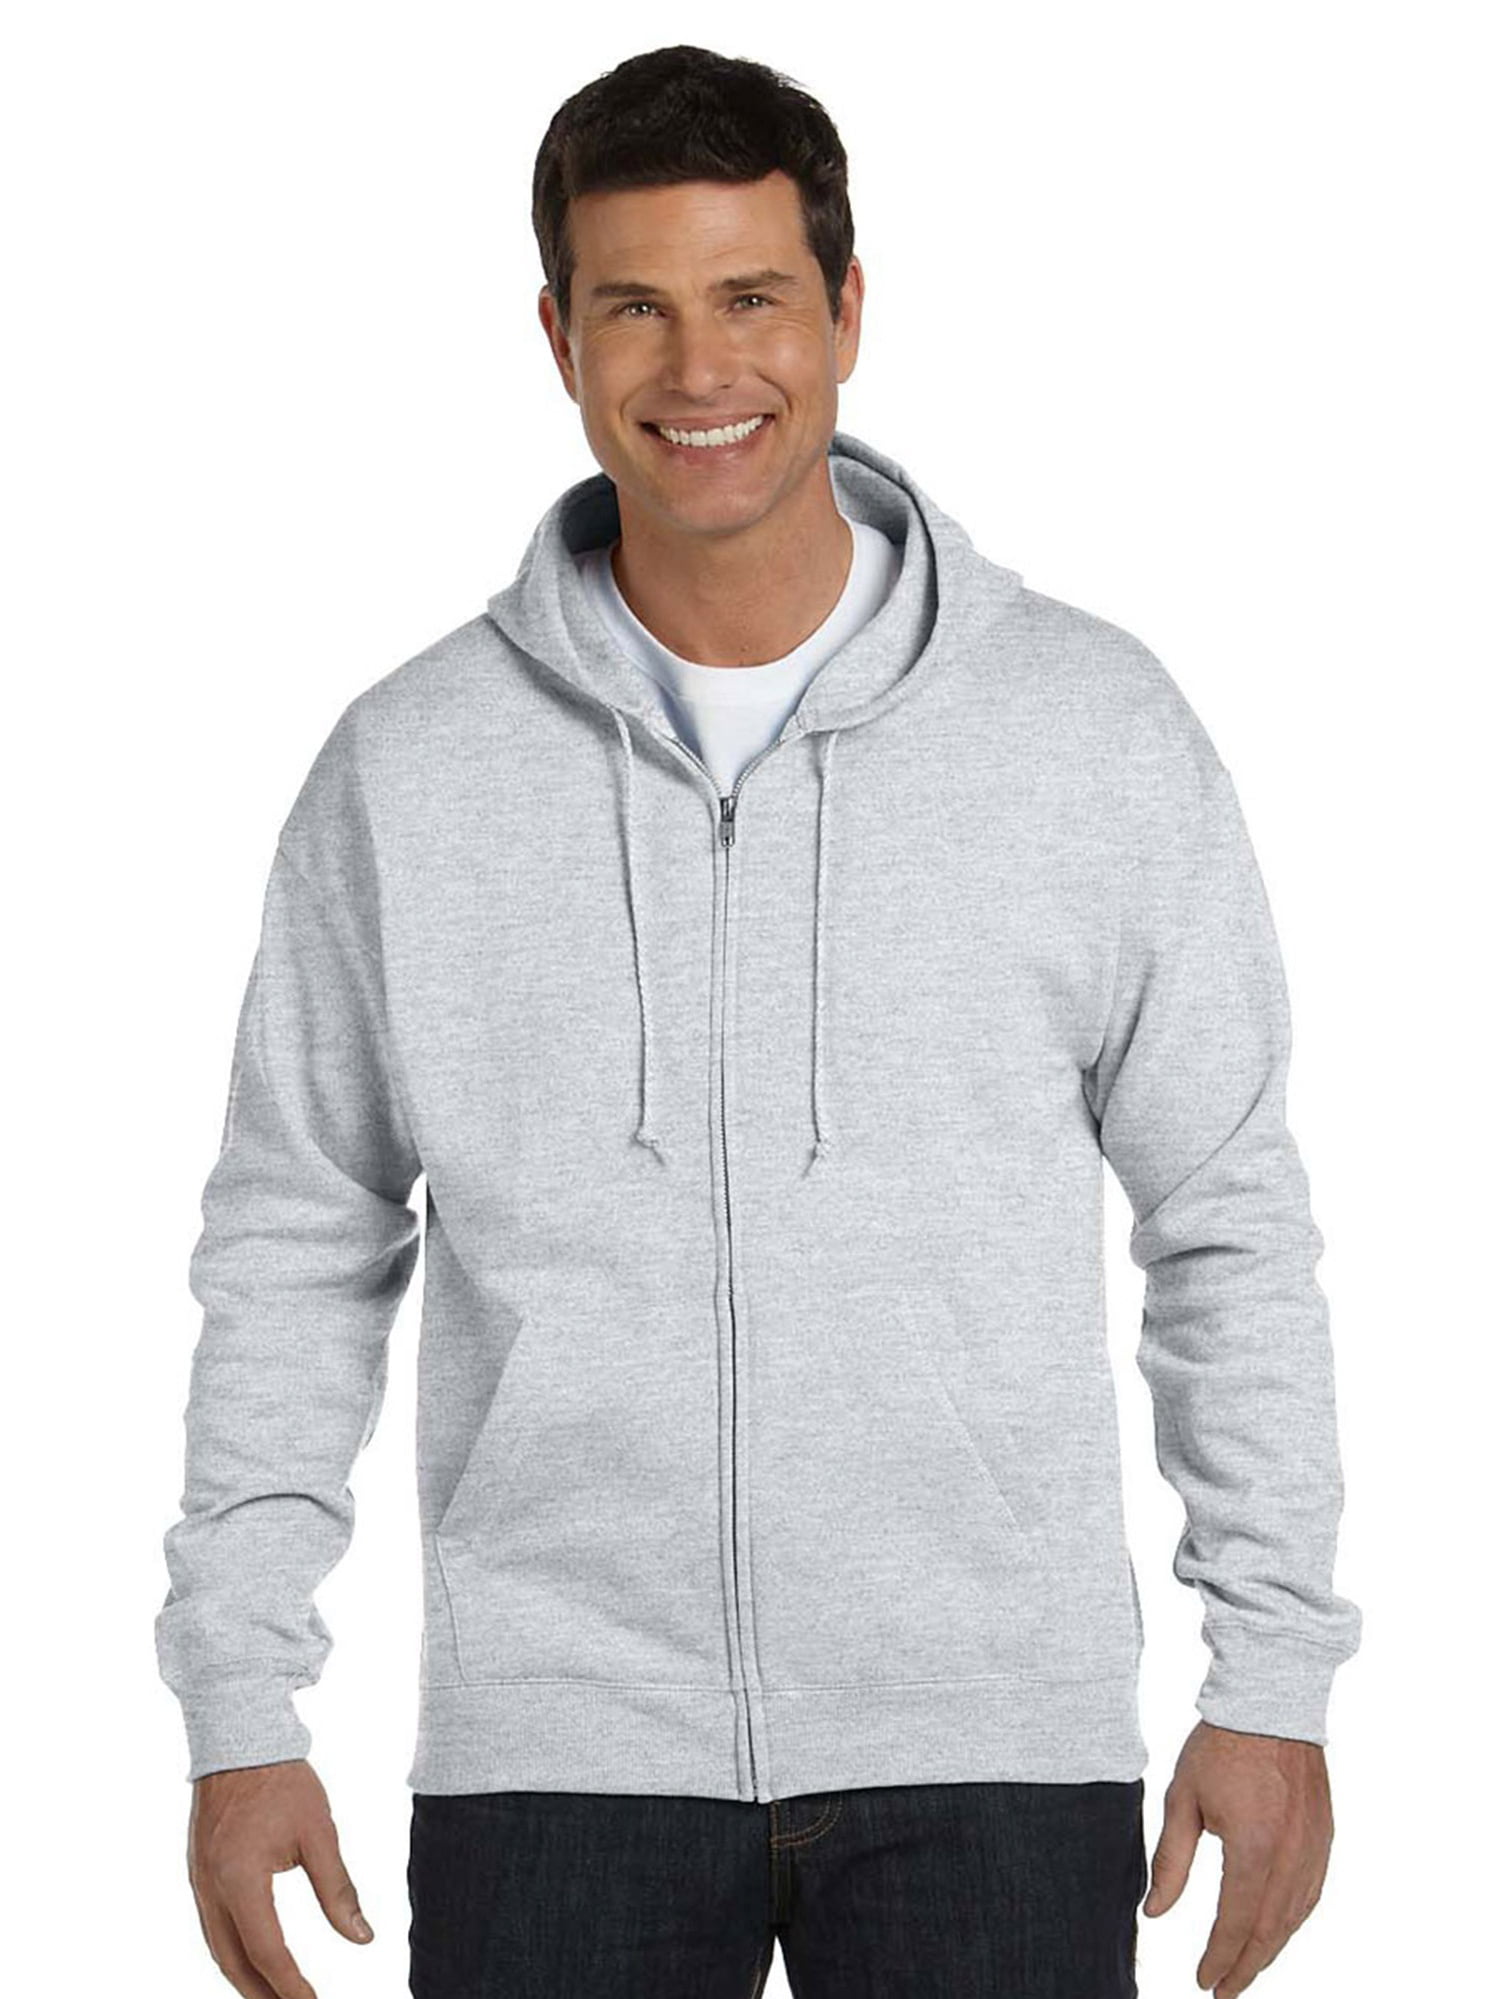 Hanes Men's EcoSmart Full Zip Hooded Sweatshirt - Walmart.com